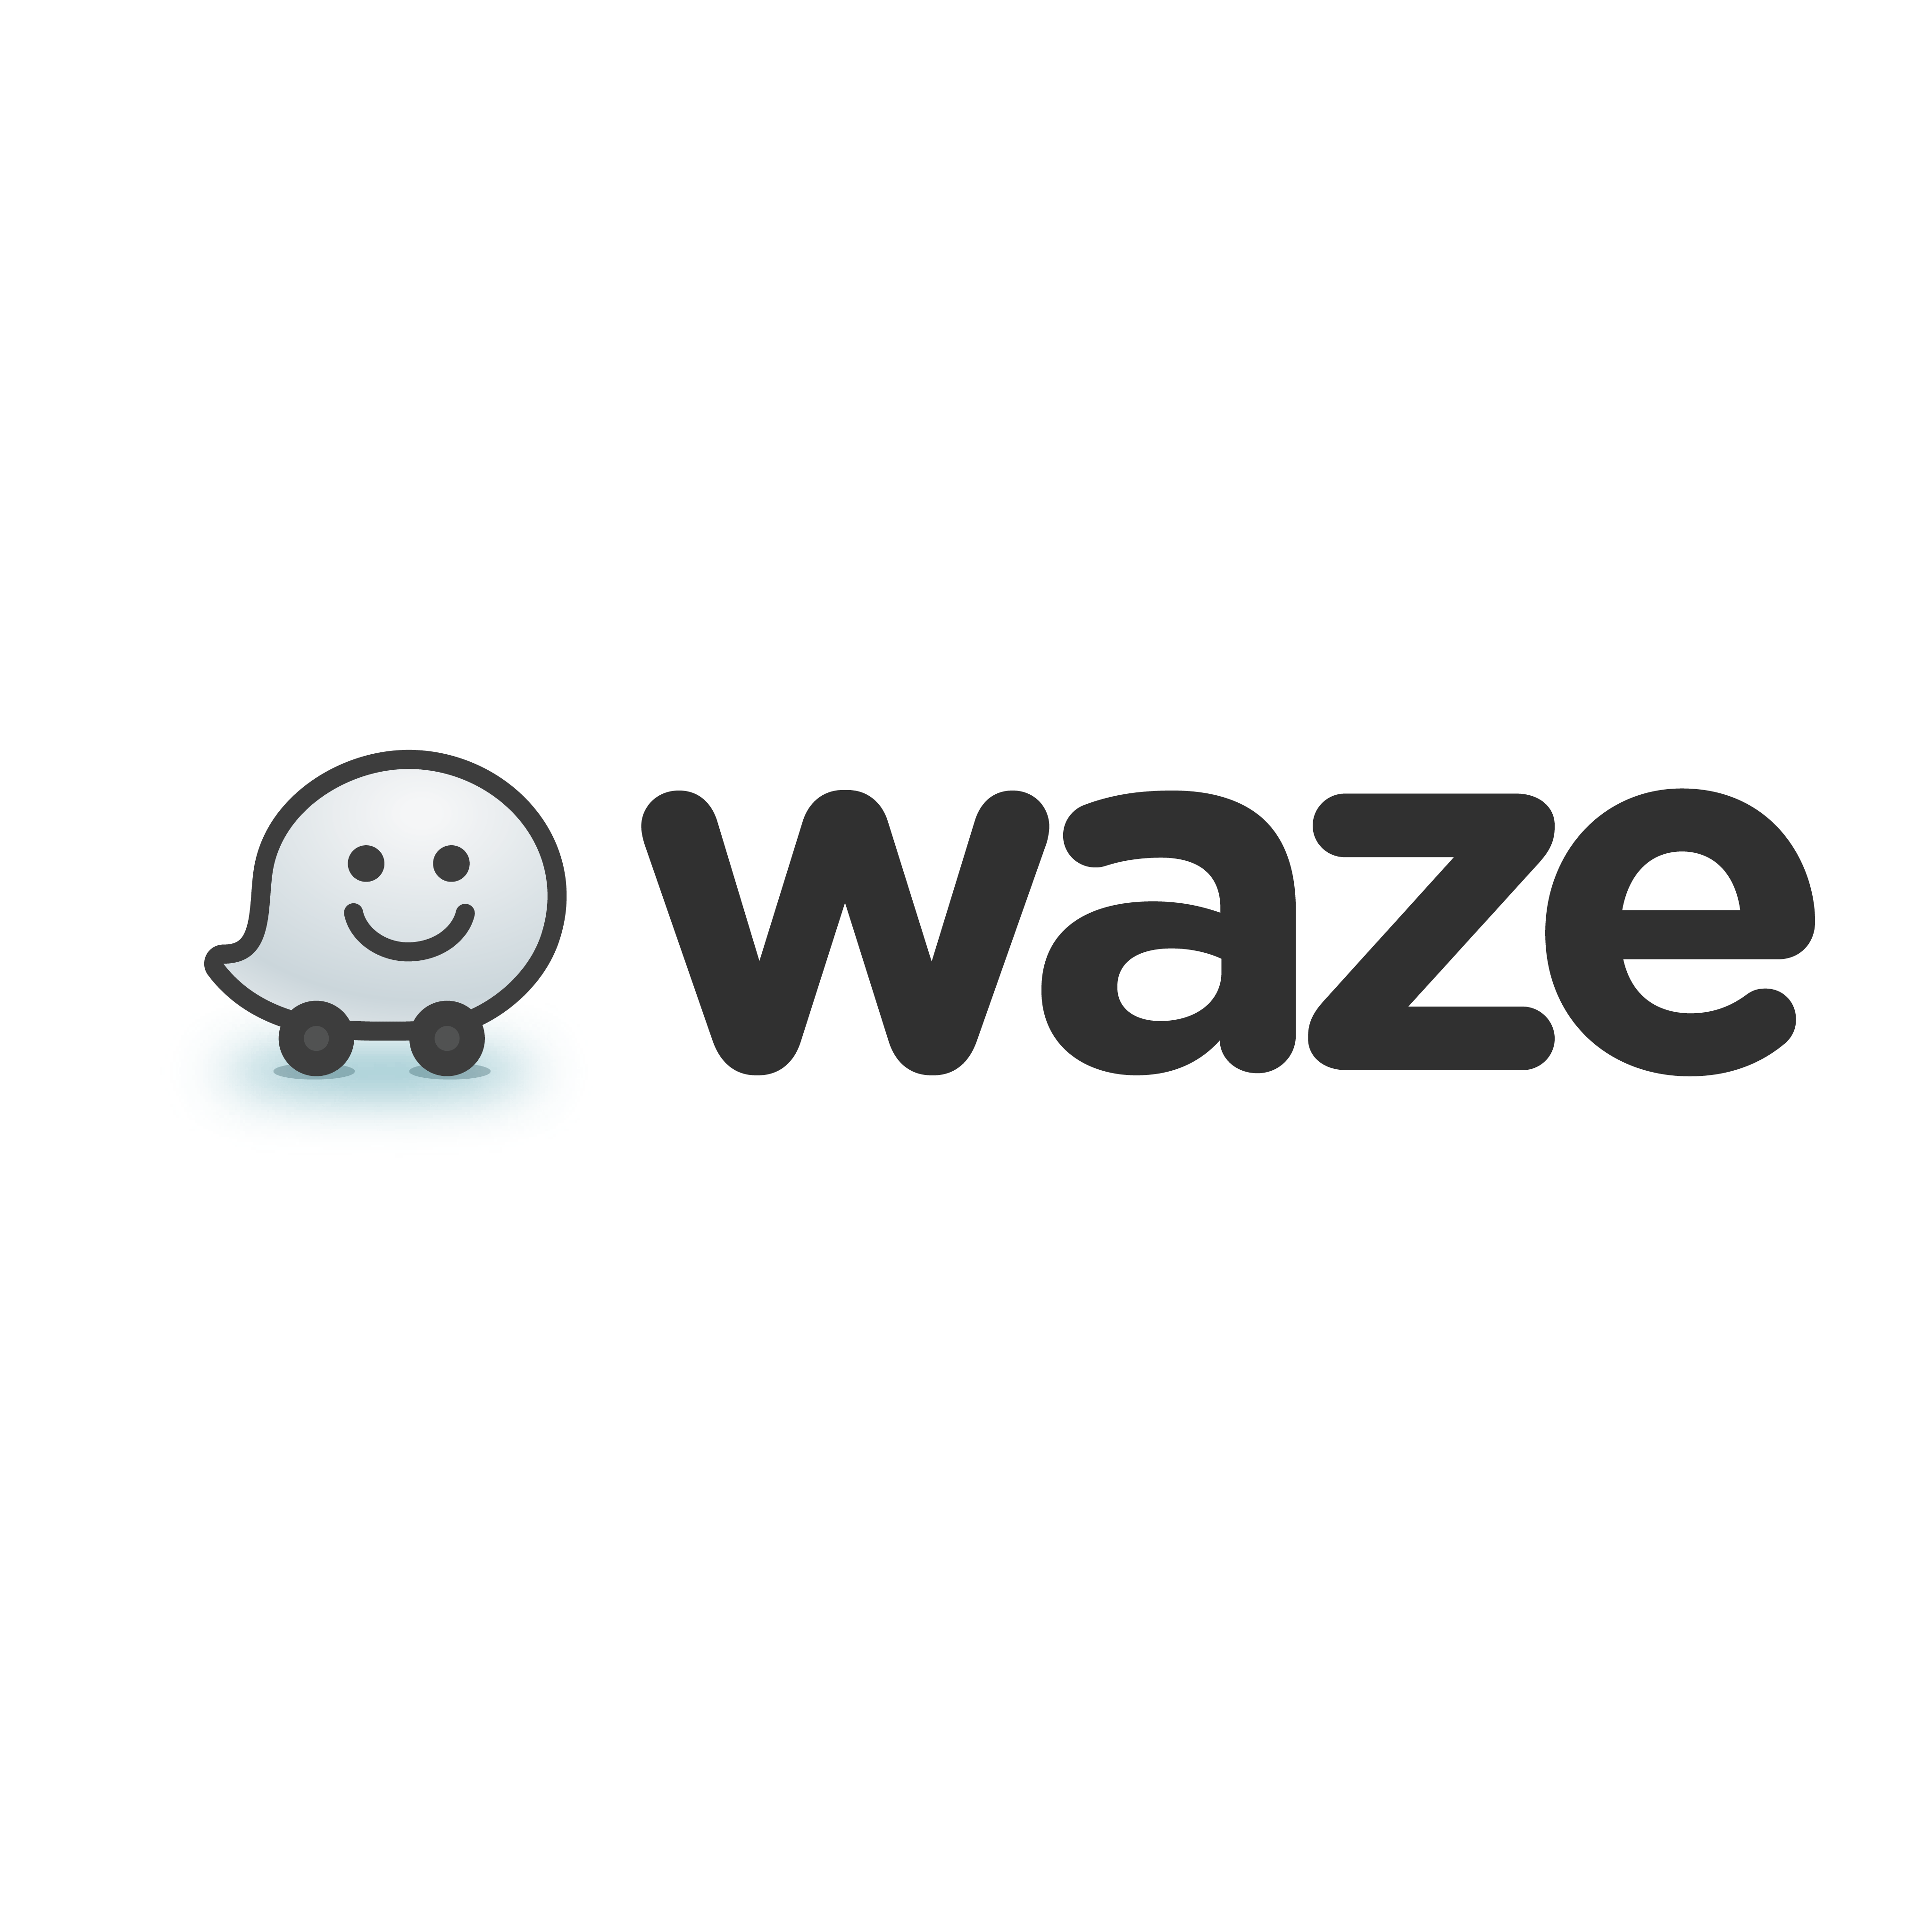 logo waze